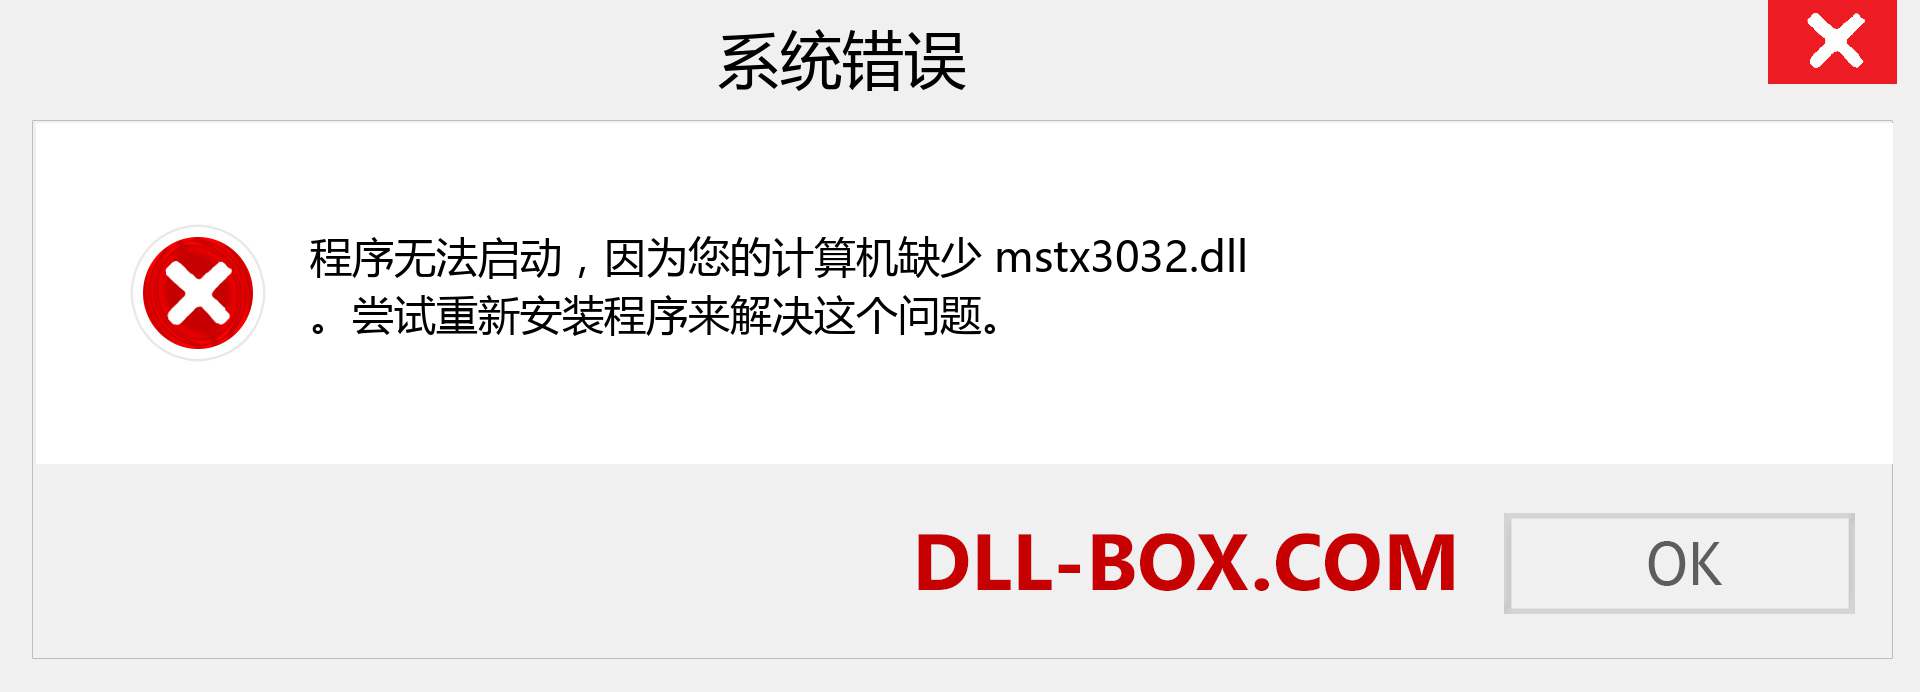 mstx3032.dll 文件丢失？。 适用于 Windows 7、8、10 的下载 - 修复 Windows、照片、图像上的 mstx3032 dll 丢失错误